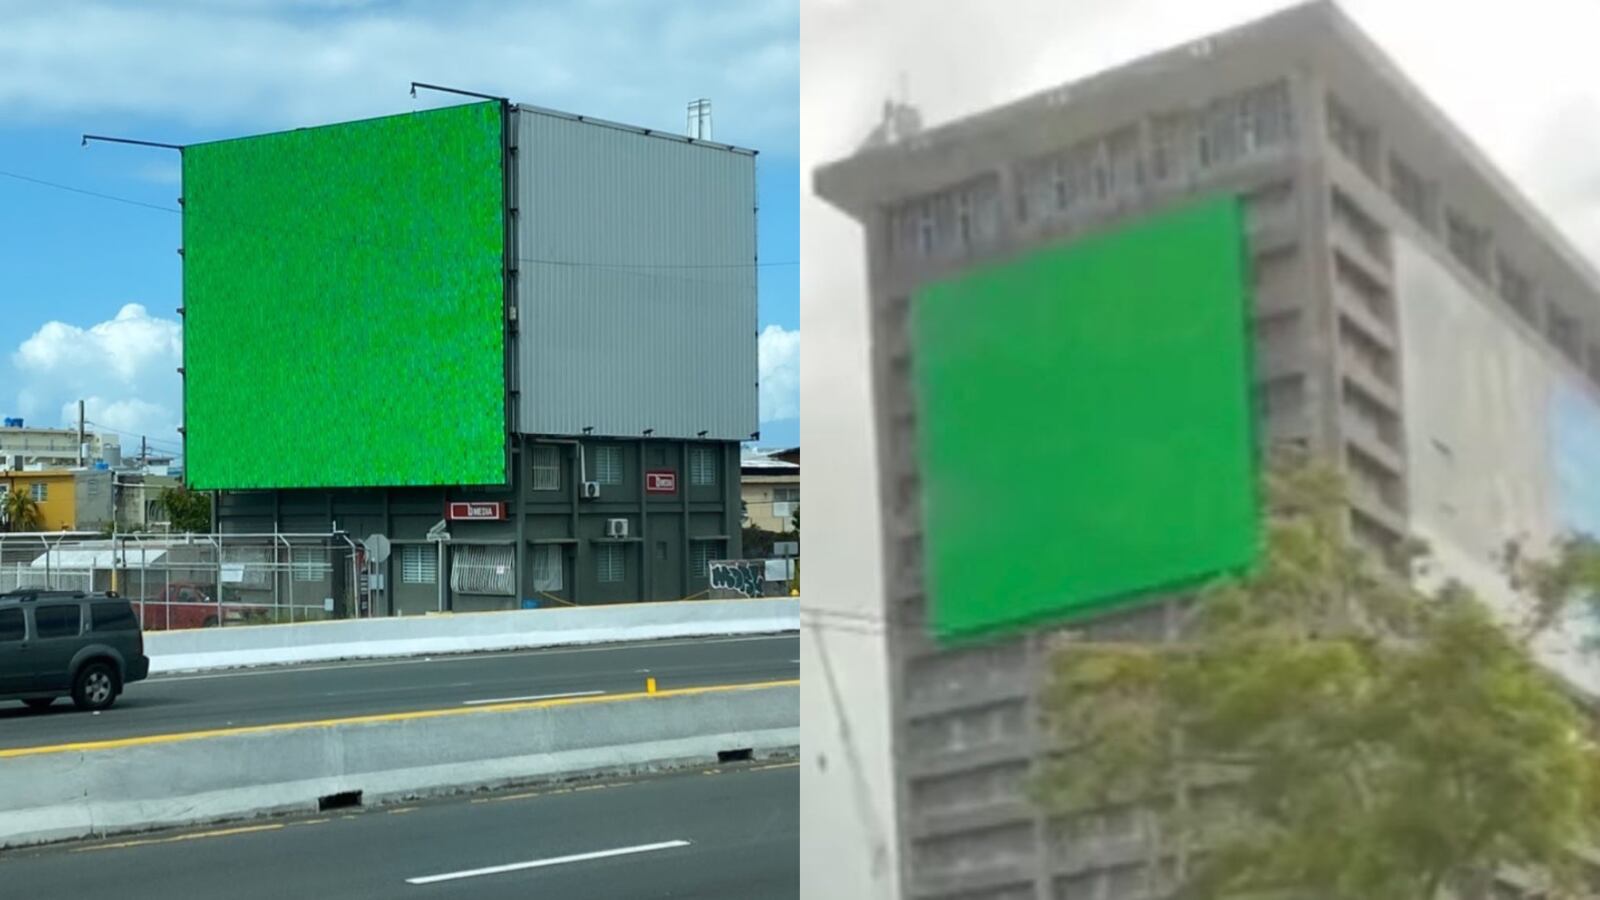 ¿Qué son los “billboards” color verdes que se han colocado en la zona